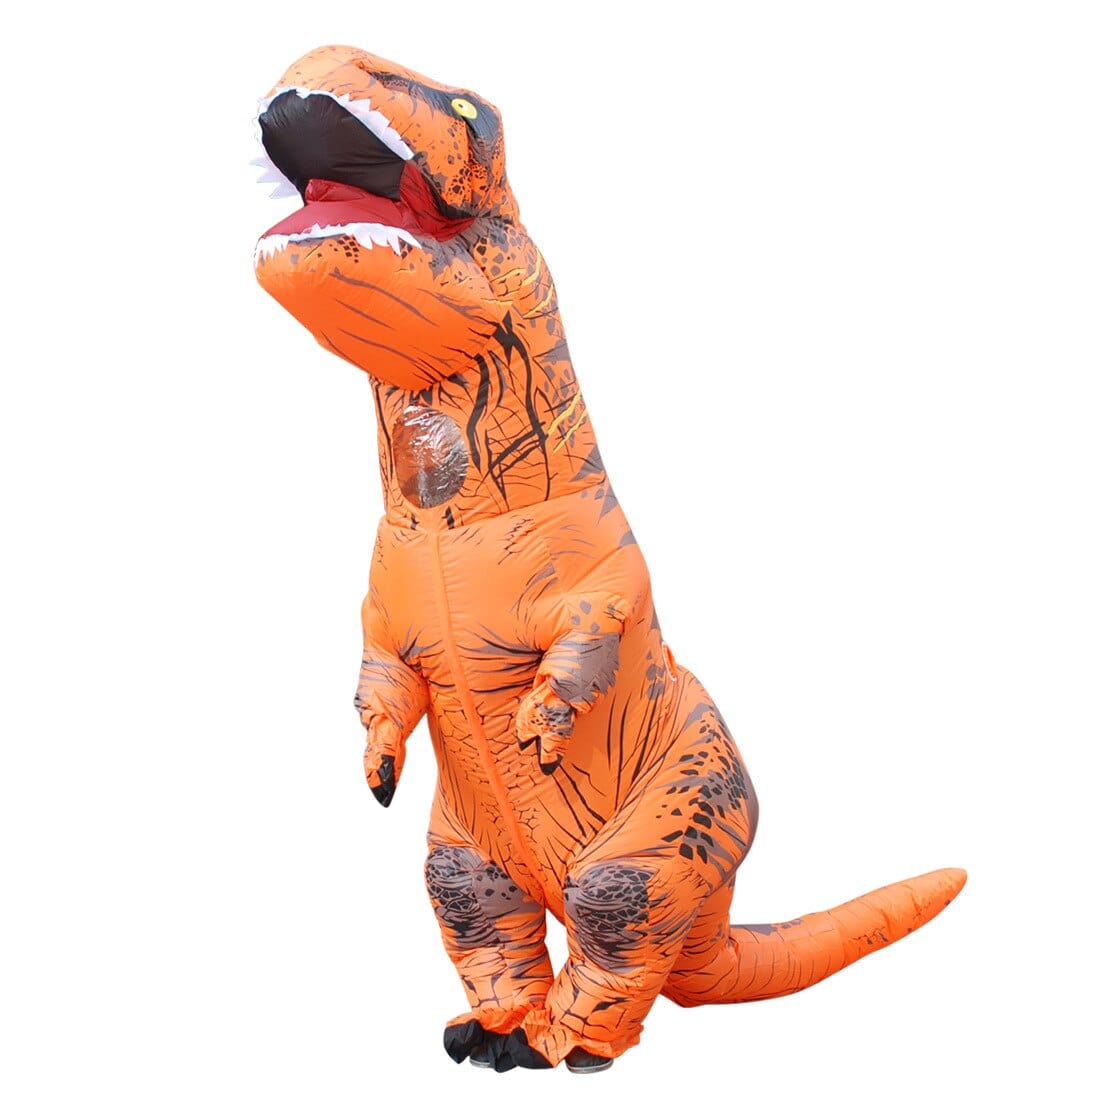 Déguisement enfant GENERIQUE Costume gonflable dinosaure adulte